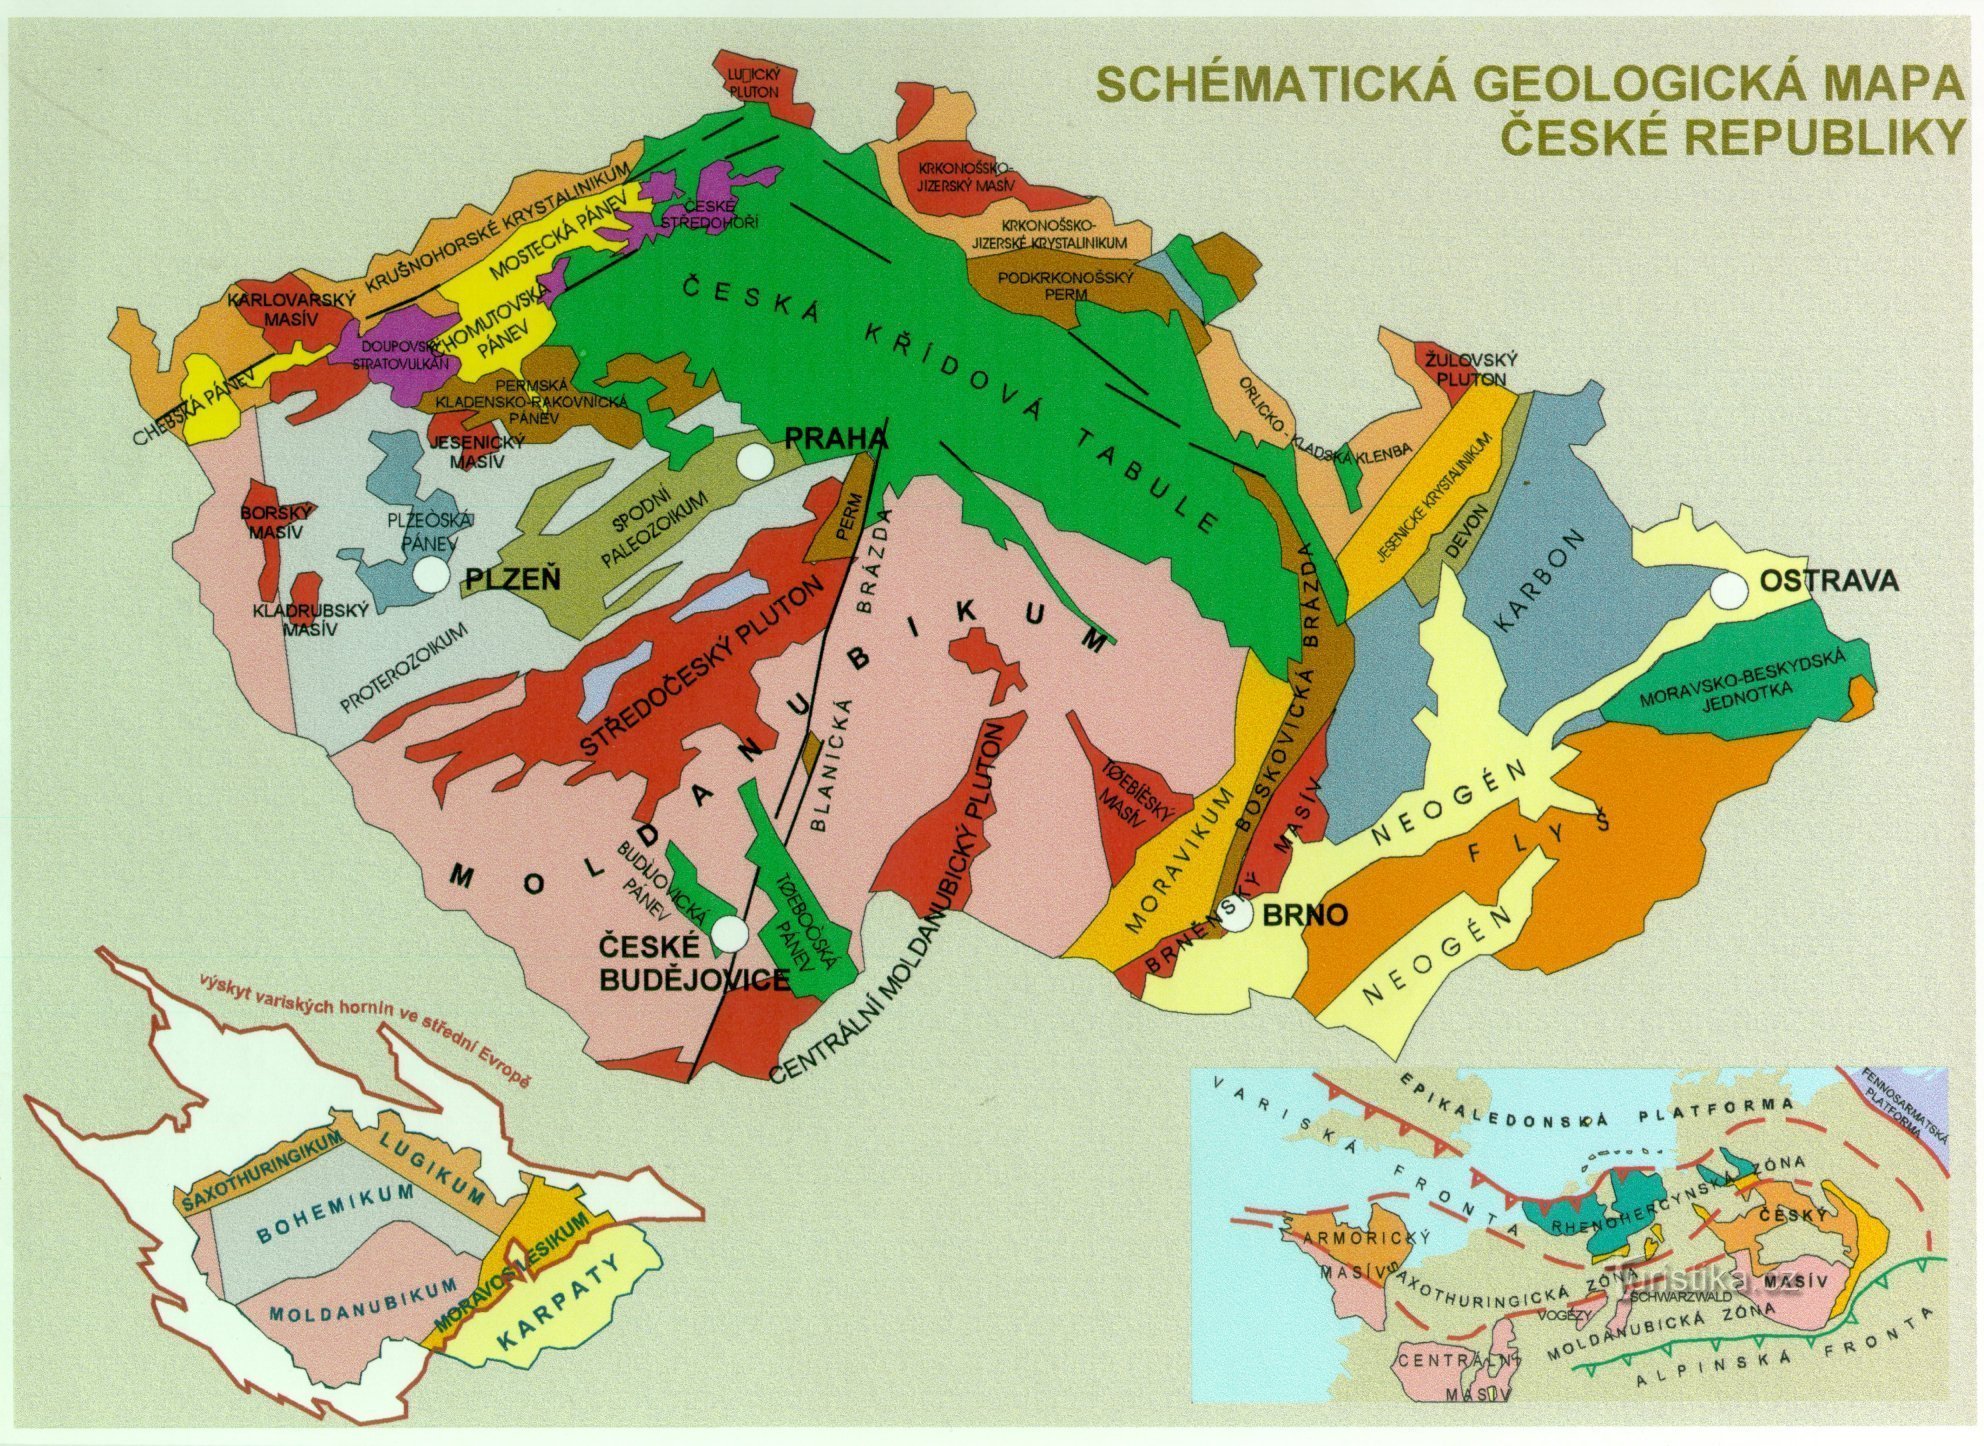 geologisk karta över Tjeckien - kompletterande bild till texten (från https://www.ig.